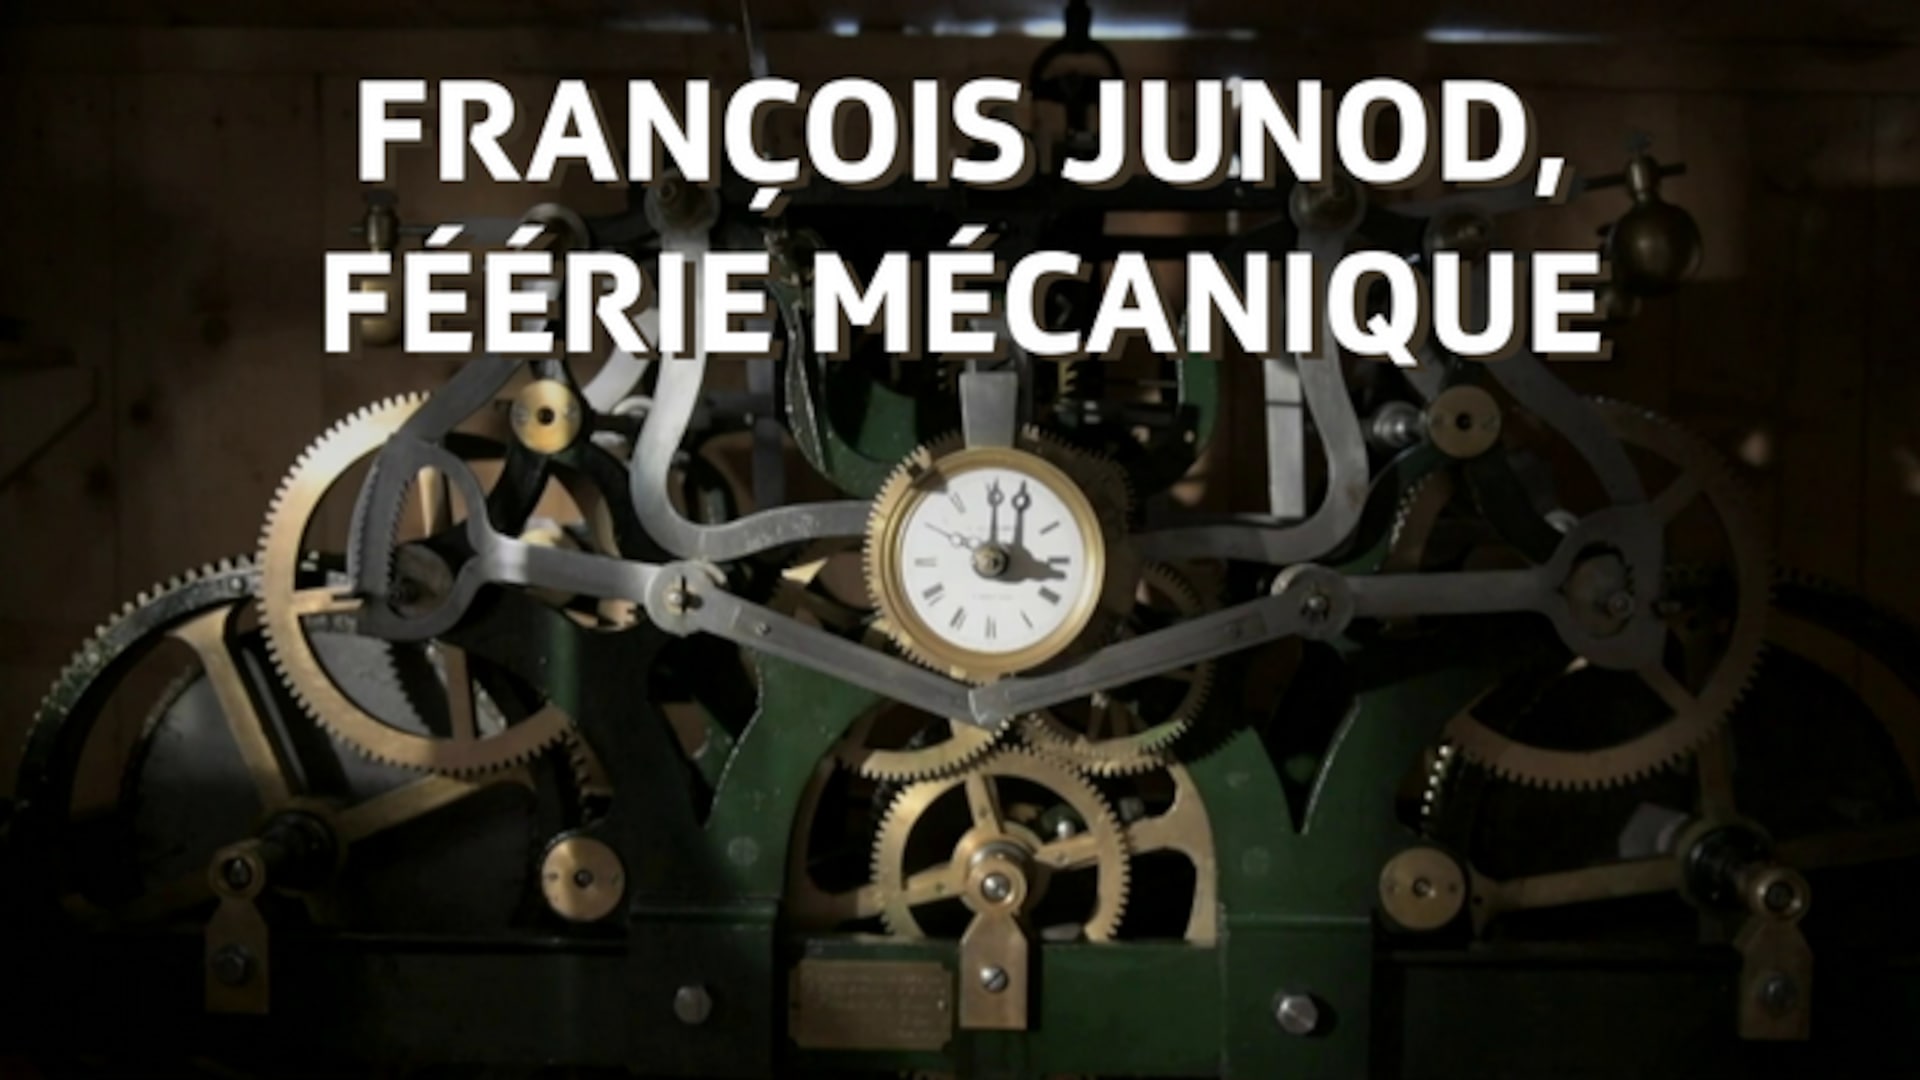 François Junod und seine mechanischen Märchen